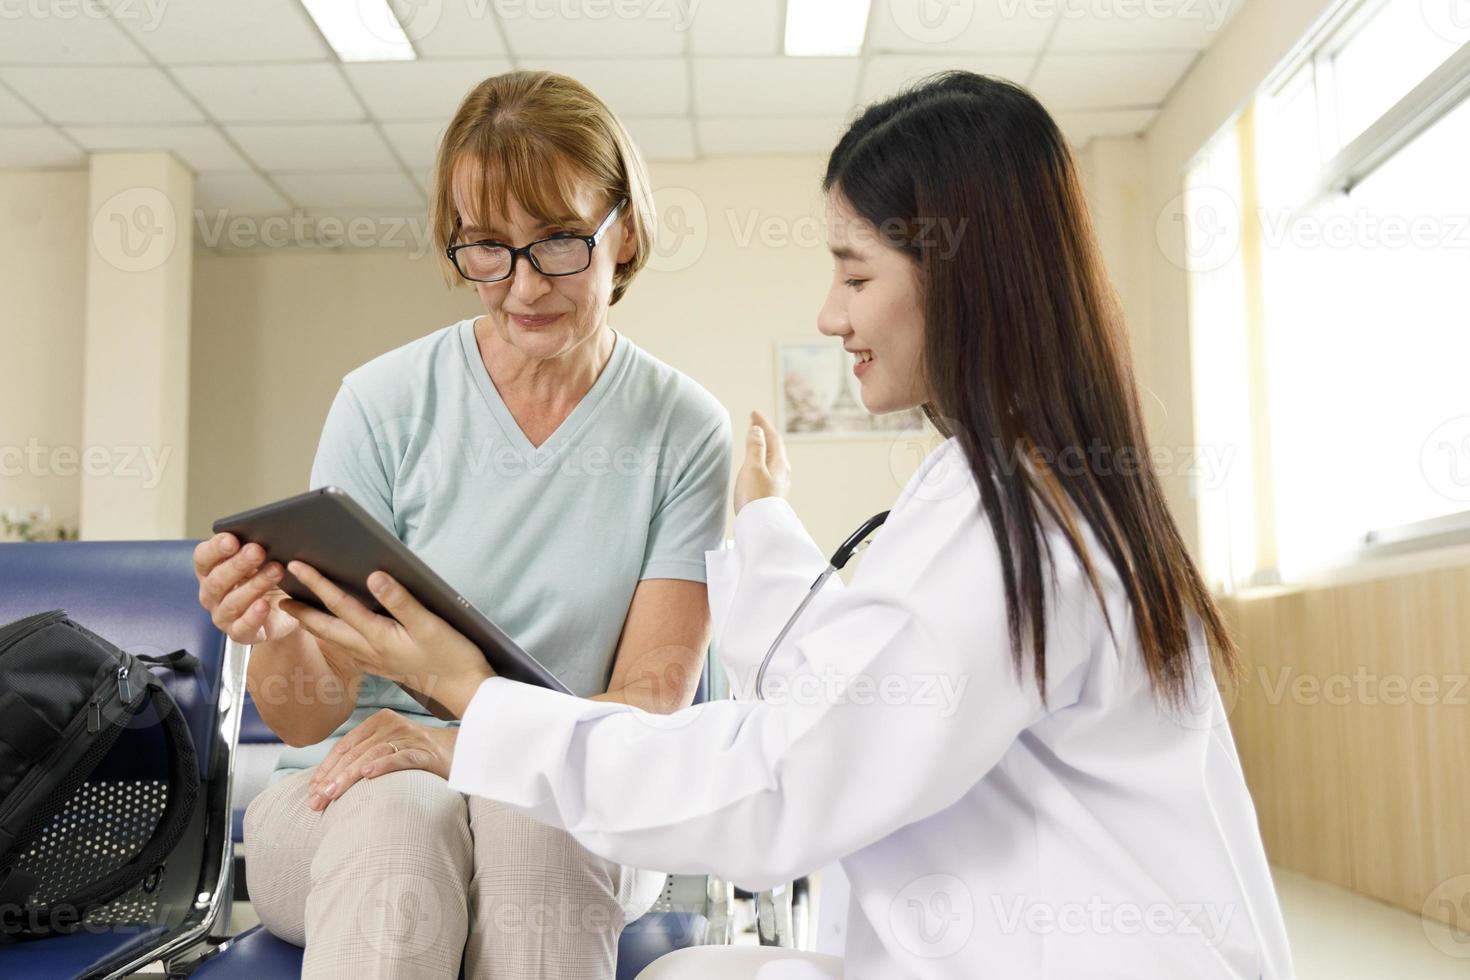 vrouwelijke arts geeft advies aan de oude vrouw patiënt via een tablet in het ziekenhuis. foto